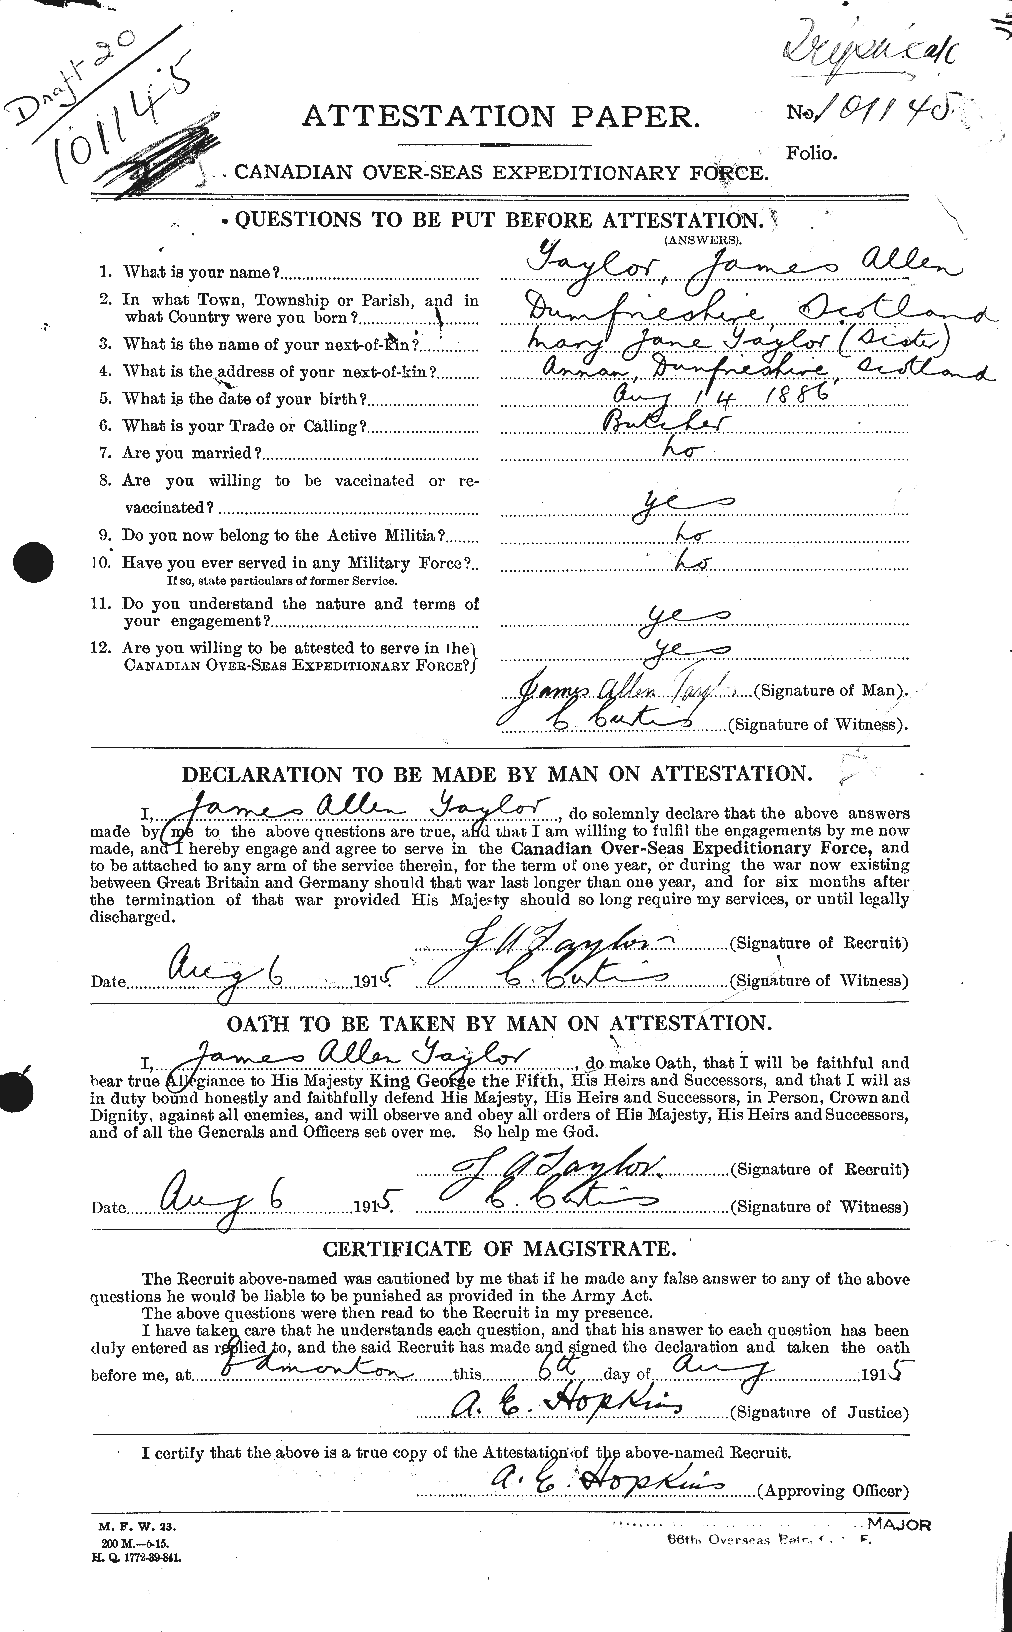 Dossiers du Personnel de la Première Guerre mondiale - CEC 626903a